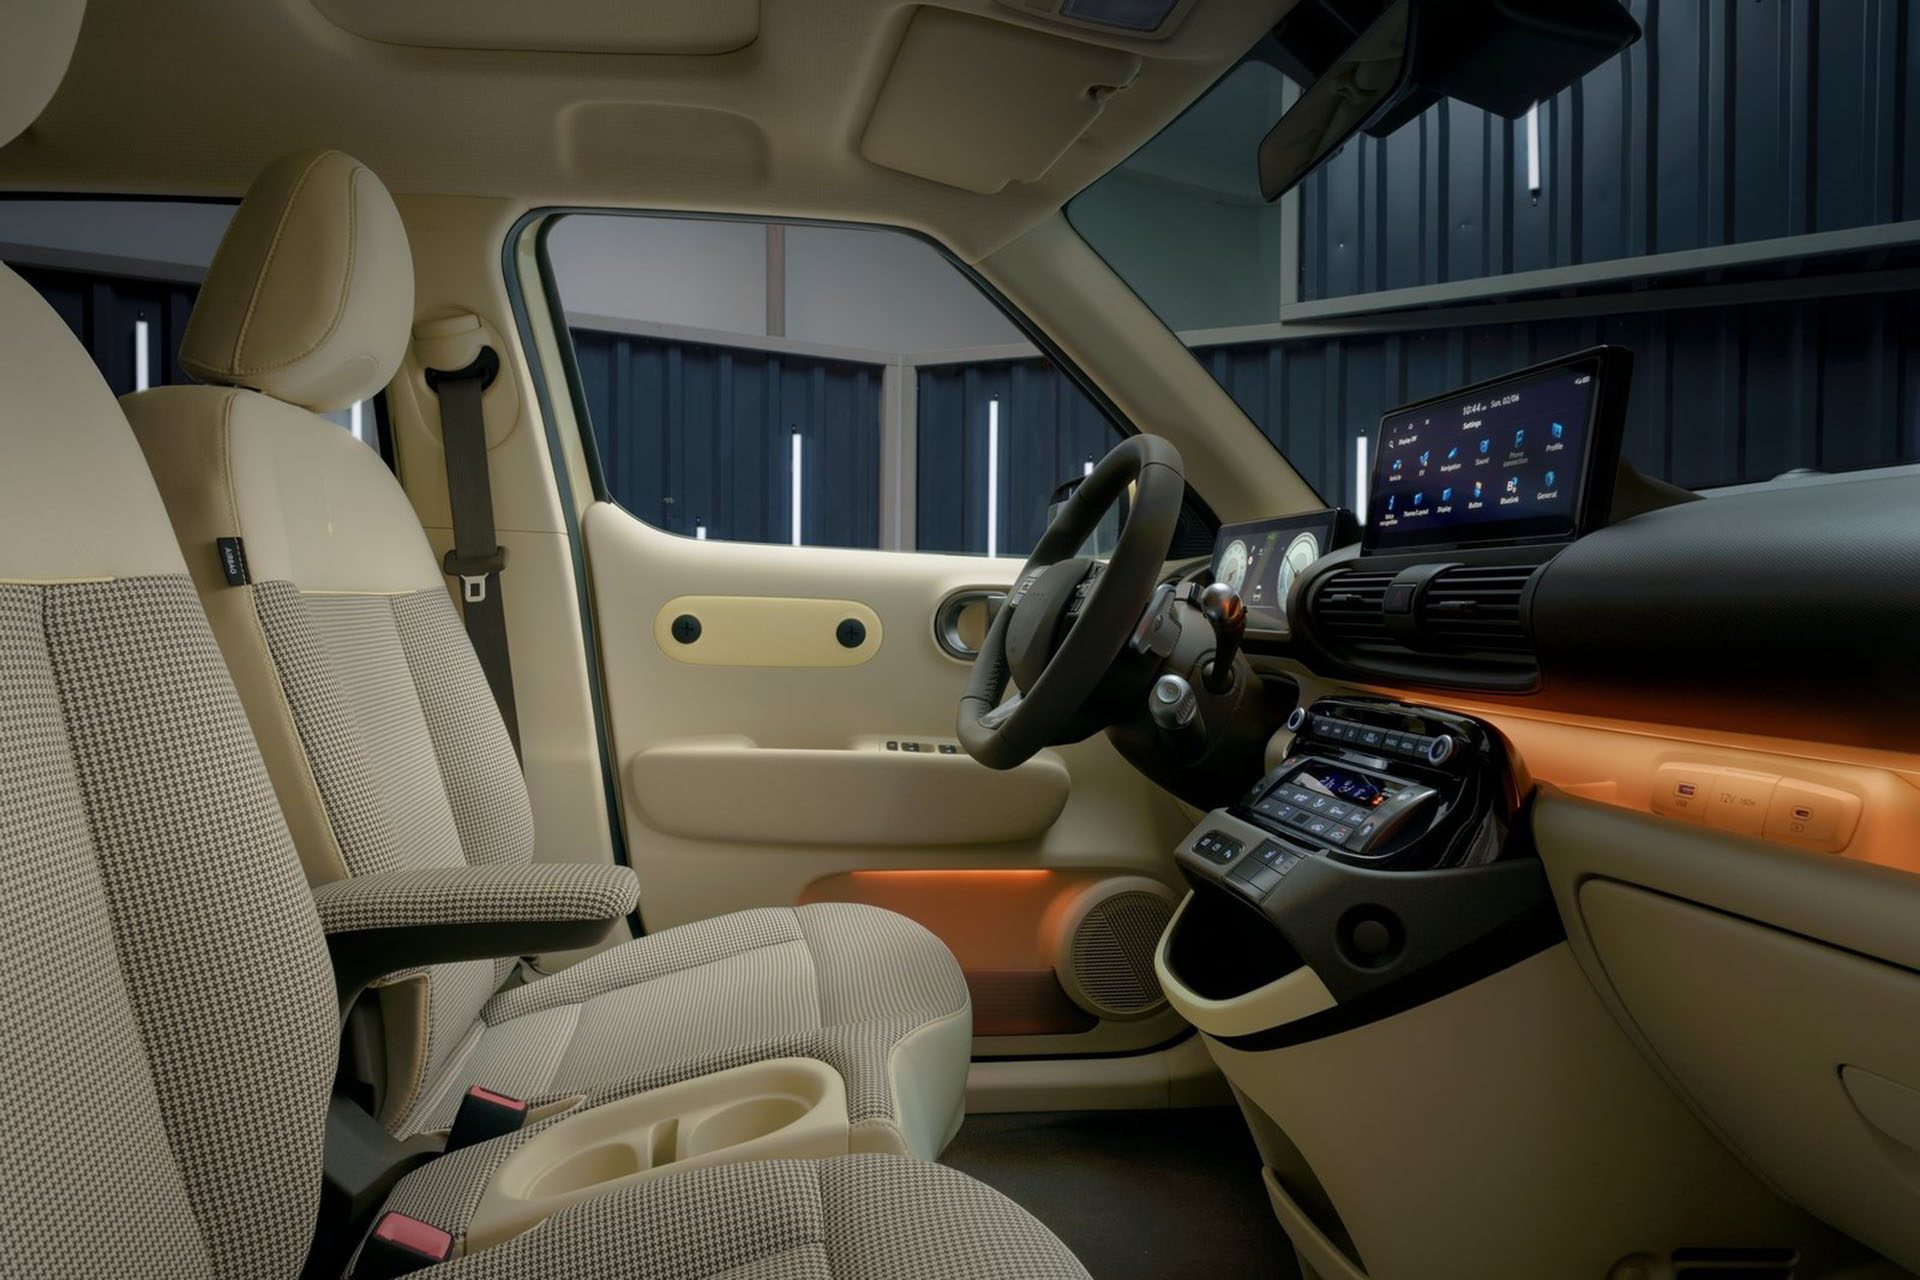 Interior allows walk-through access to rear seats.